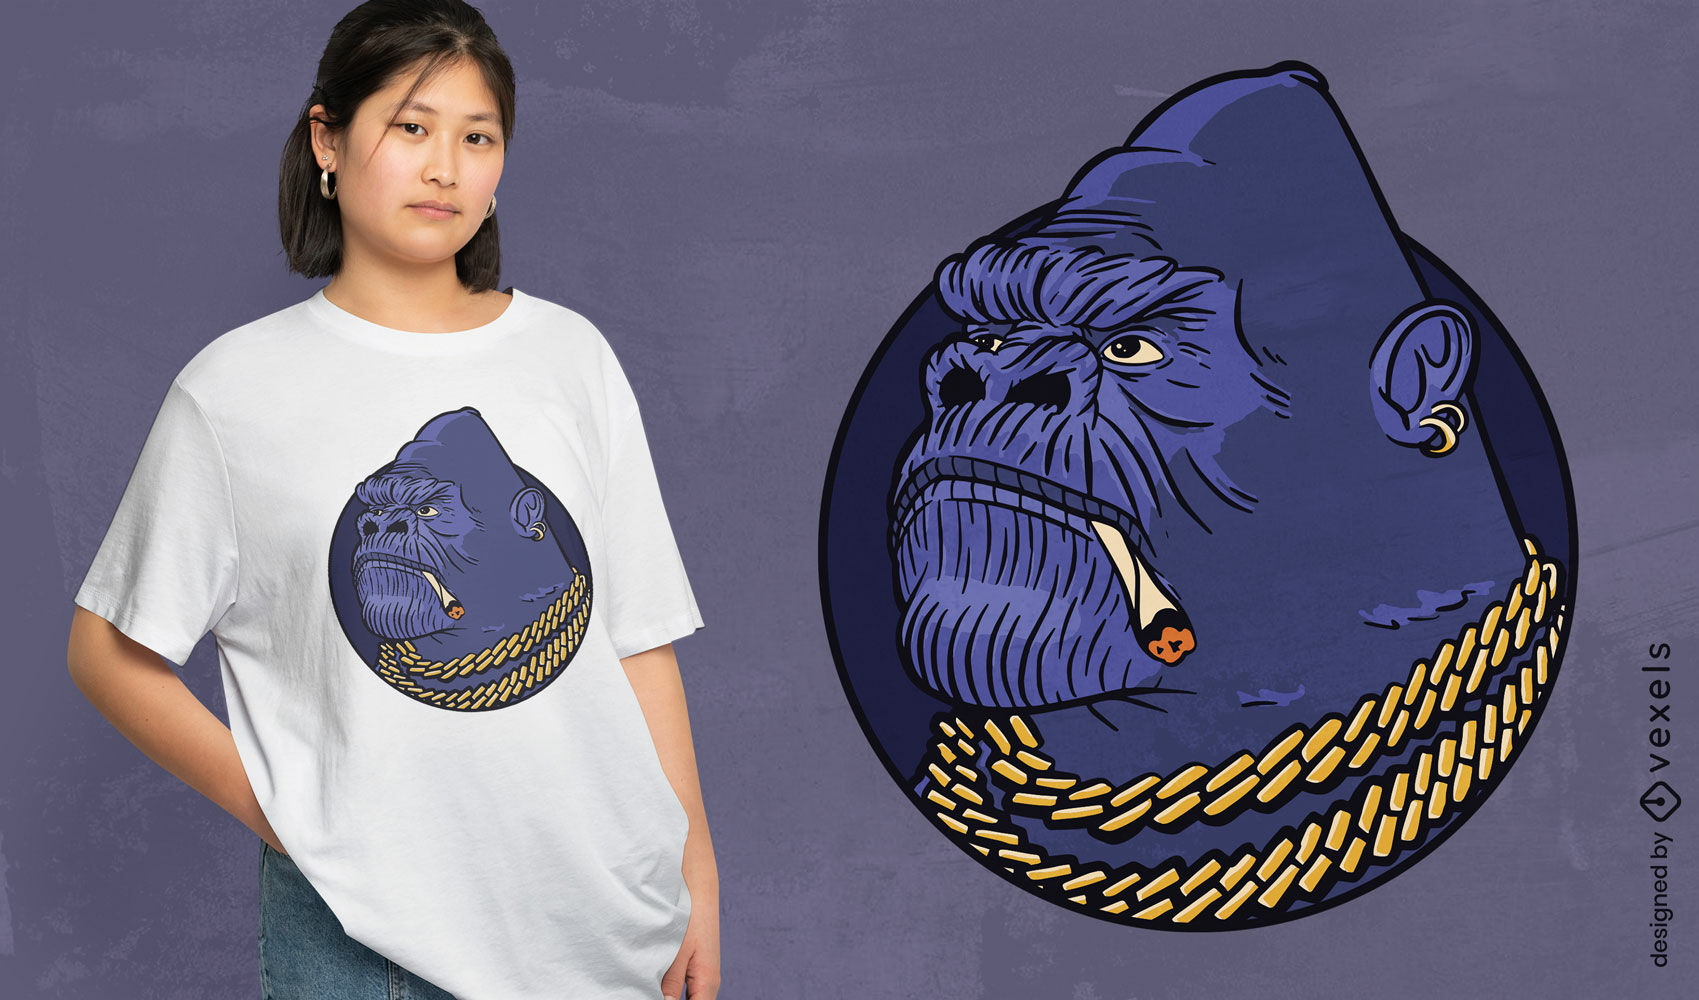 Gangster gorilla t-shirt design